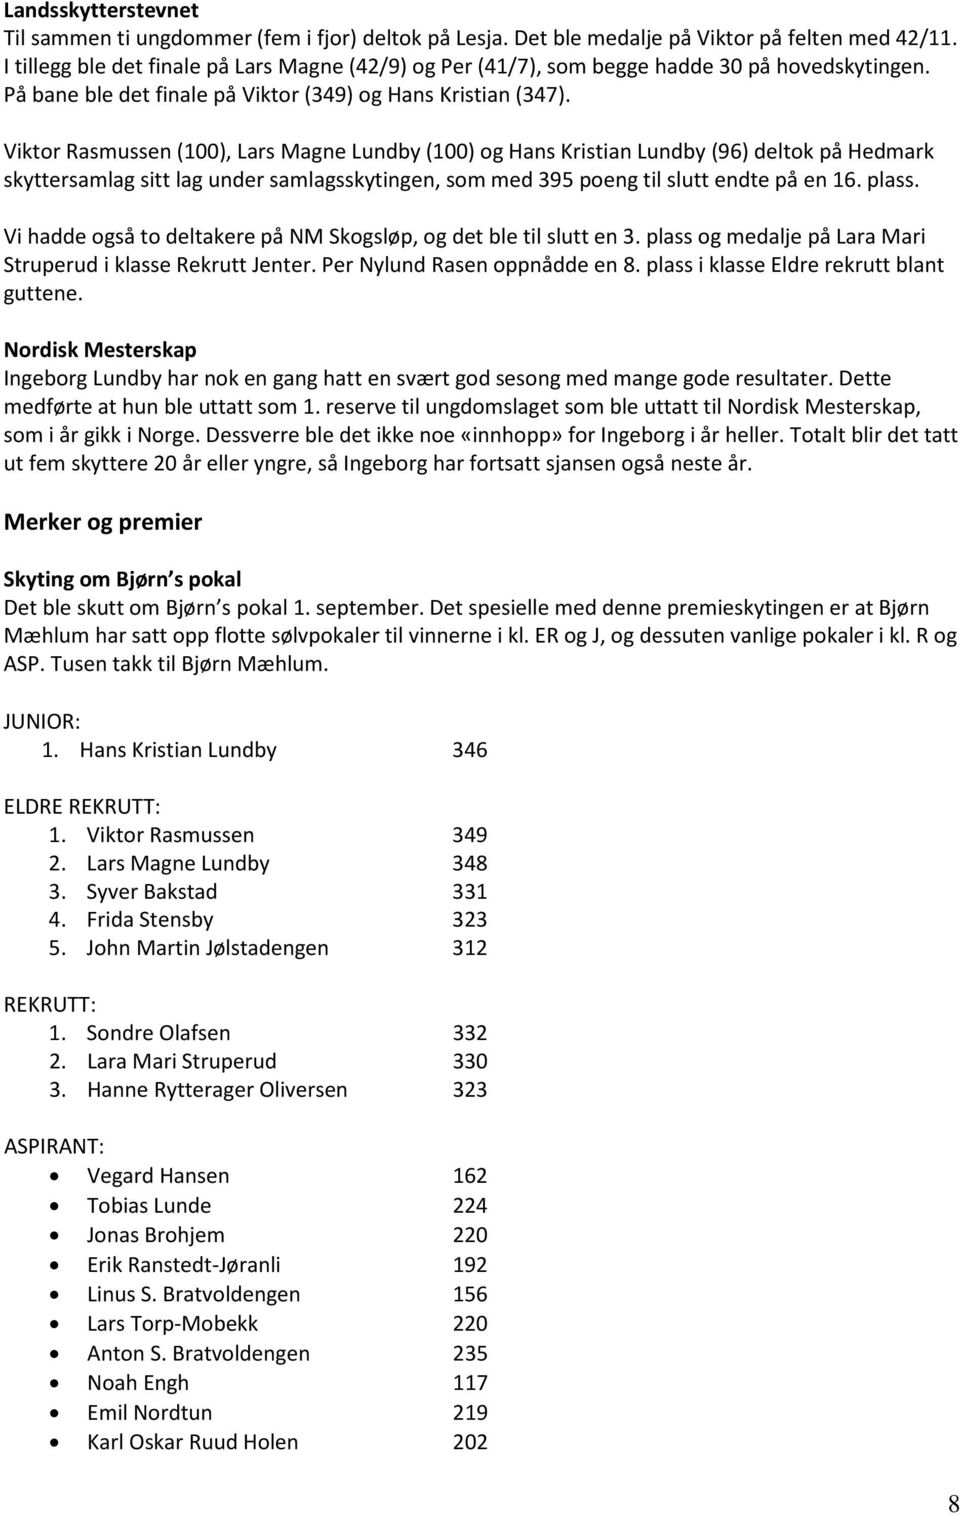 Viktor Rasmussen (100), Lars Magne Lundby (100) og Hans Kristian Lundby (96) deltok på Hedmark skyttersamlag sitt lag under samlagsskytingen, som med 395 poeng til slutt endte på en 16. plass.